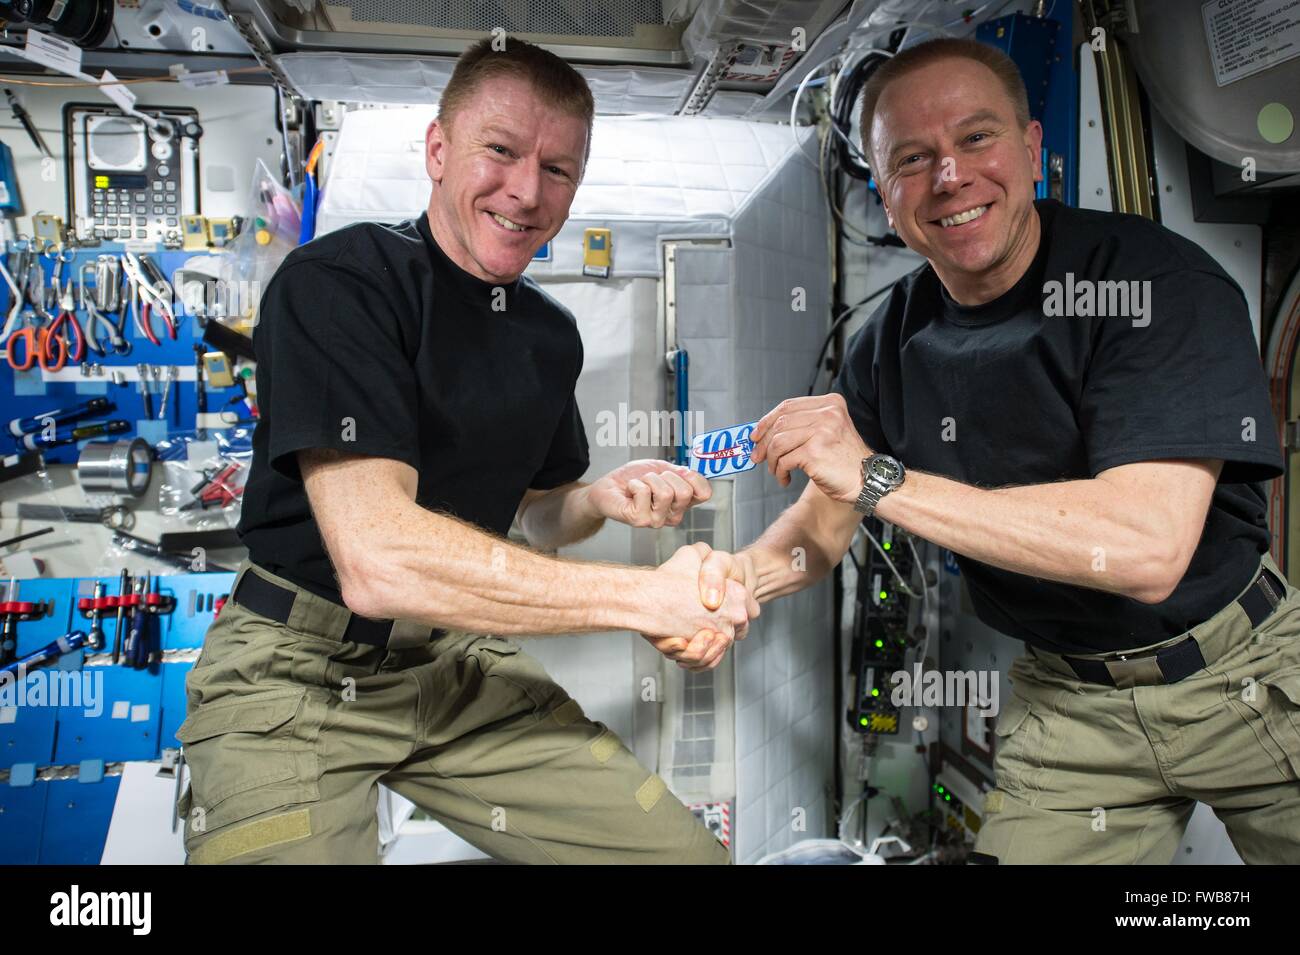 El astronauta estadounidense Tim Kopra, derecha, presenta el astronauta de la Agencia Espacial Europea Tim Peake con un parche para conmemorar su centésimo día en el espacio a bordo de la Estación Espacial Internacional el 24 de marzo de 2016 en la órbita de la tierra. Foto de stock